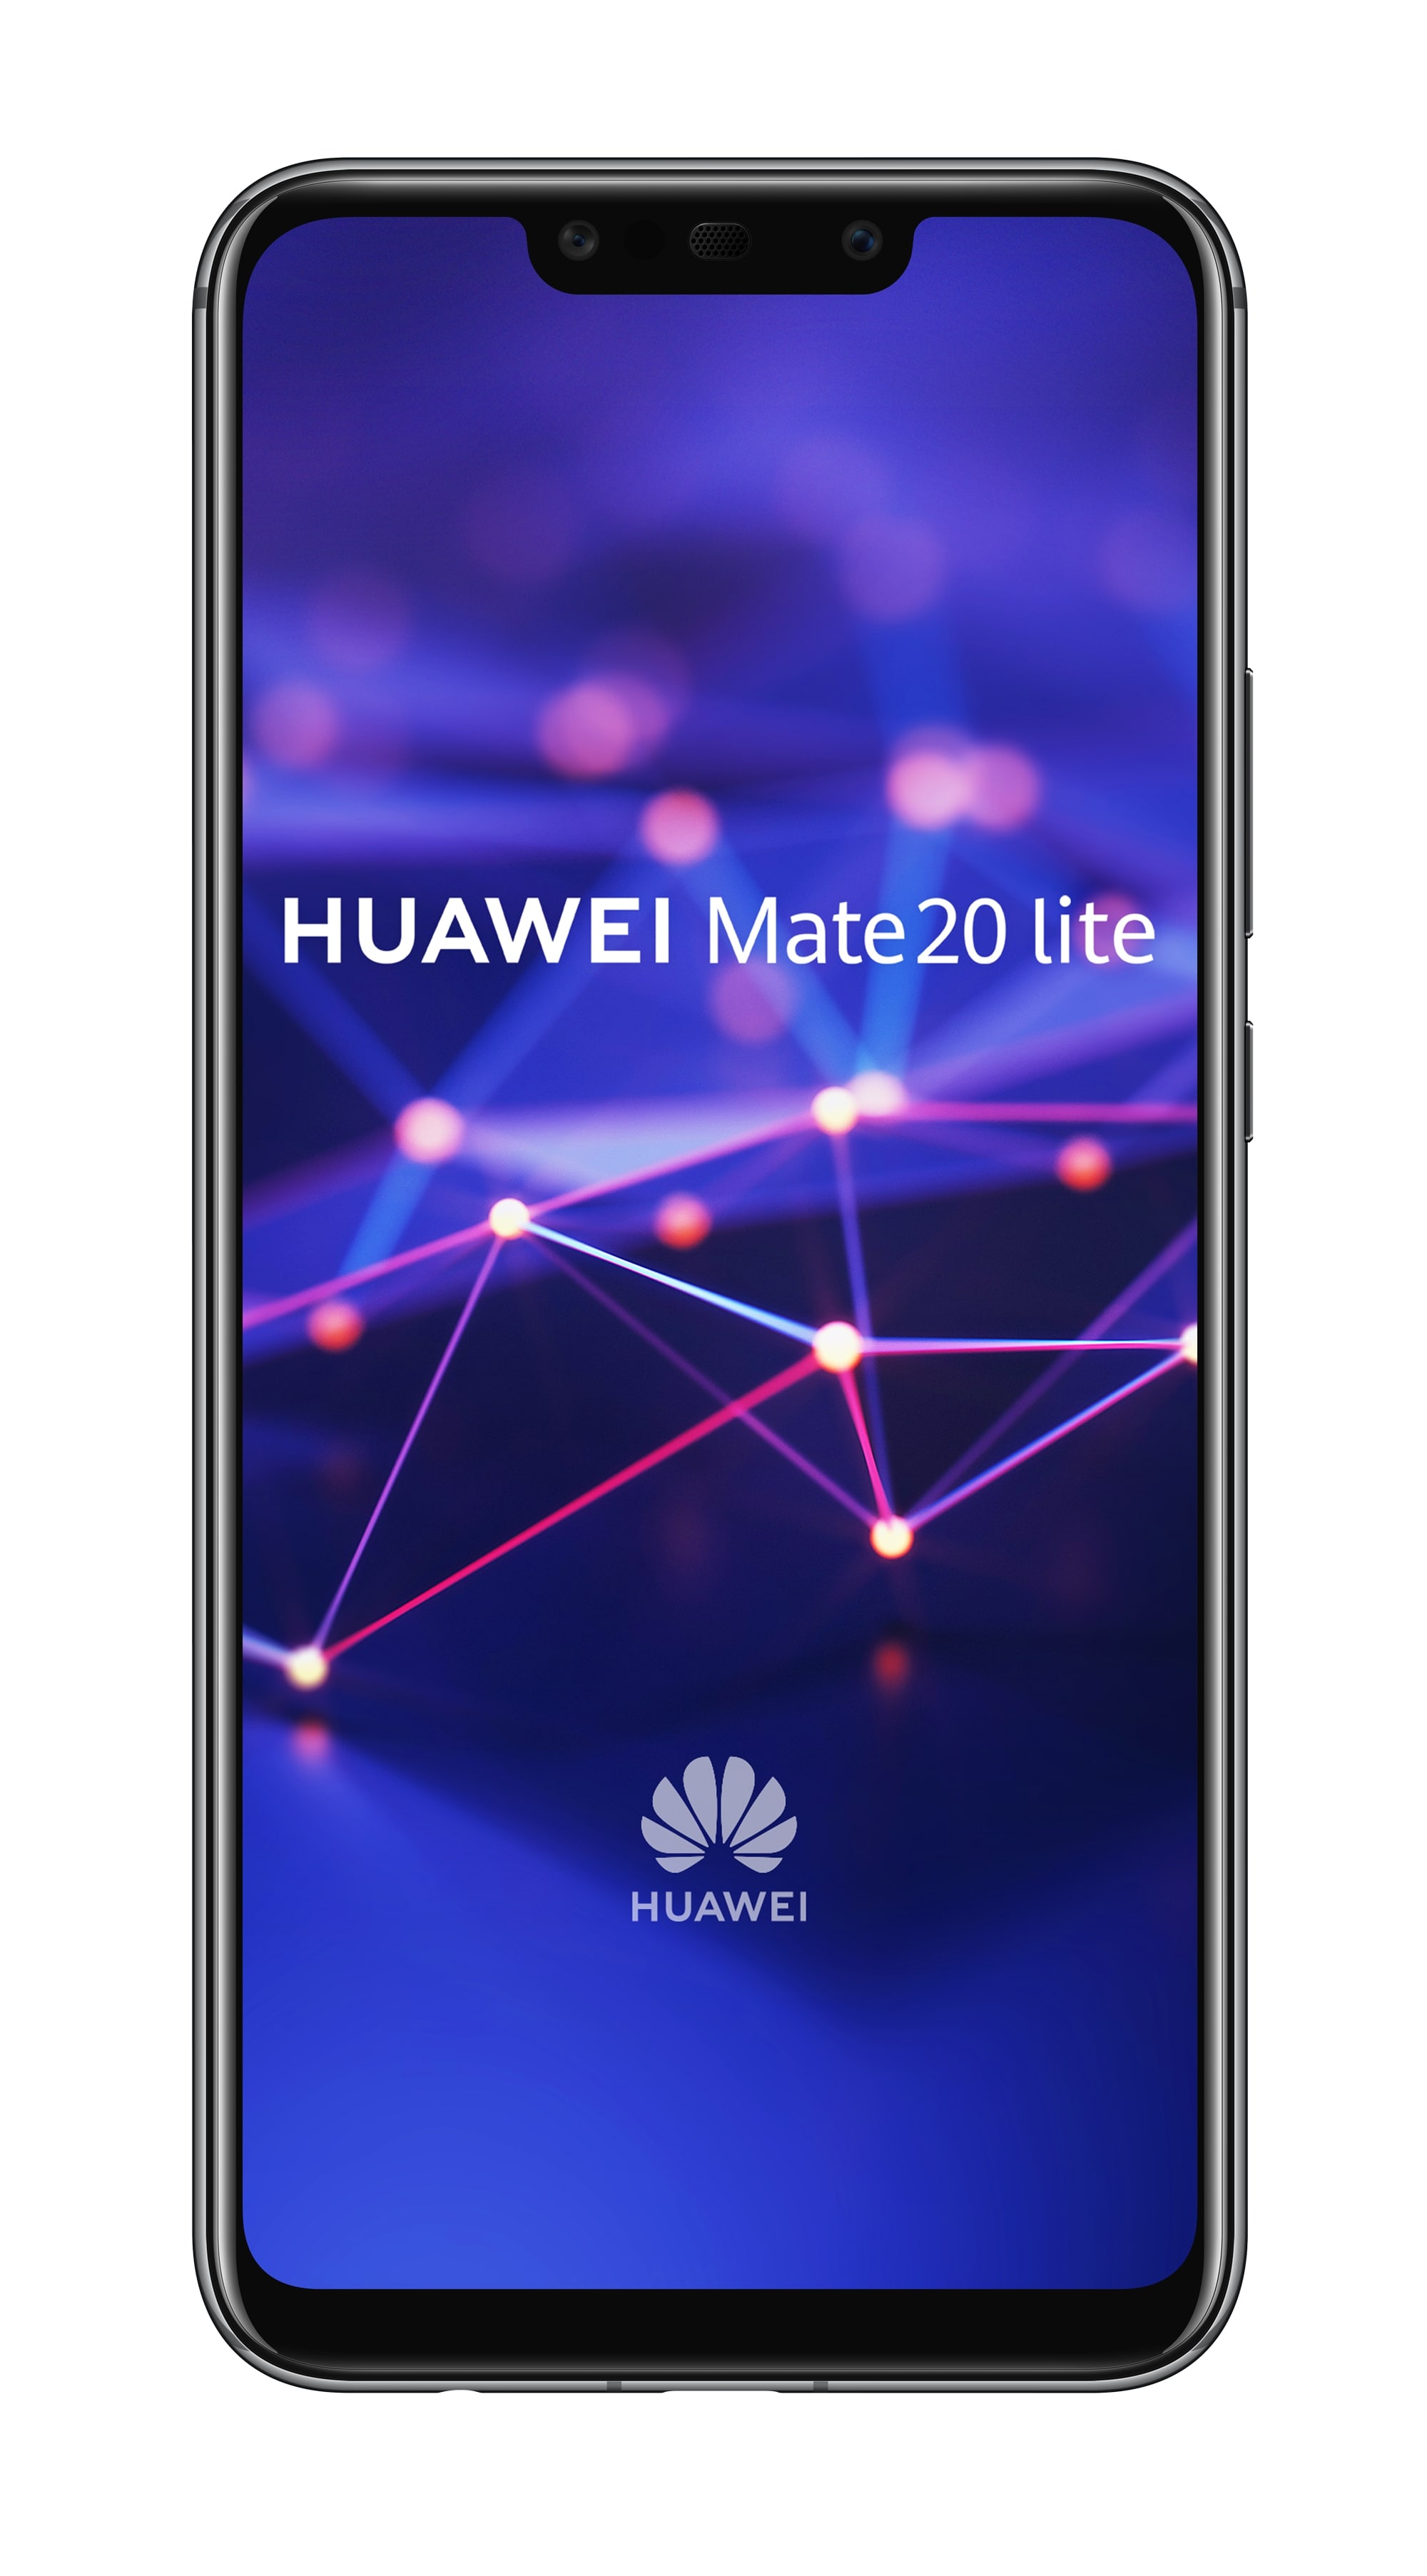 Хуавей 20 lite. Huawei Mate 20 Lite. Huawei Mate 20 Lite 64gb. Huawei Mate 20 Lite Sne-lx1. Смартфон Honor Mate 20 Lite.